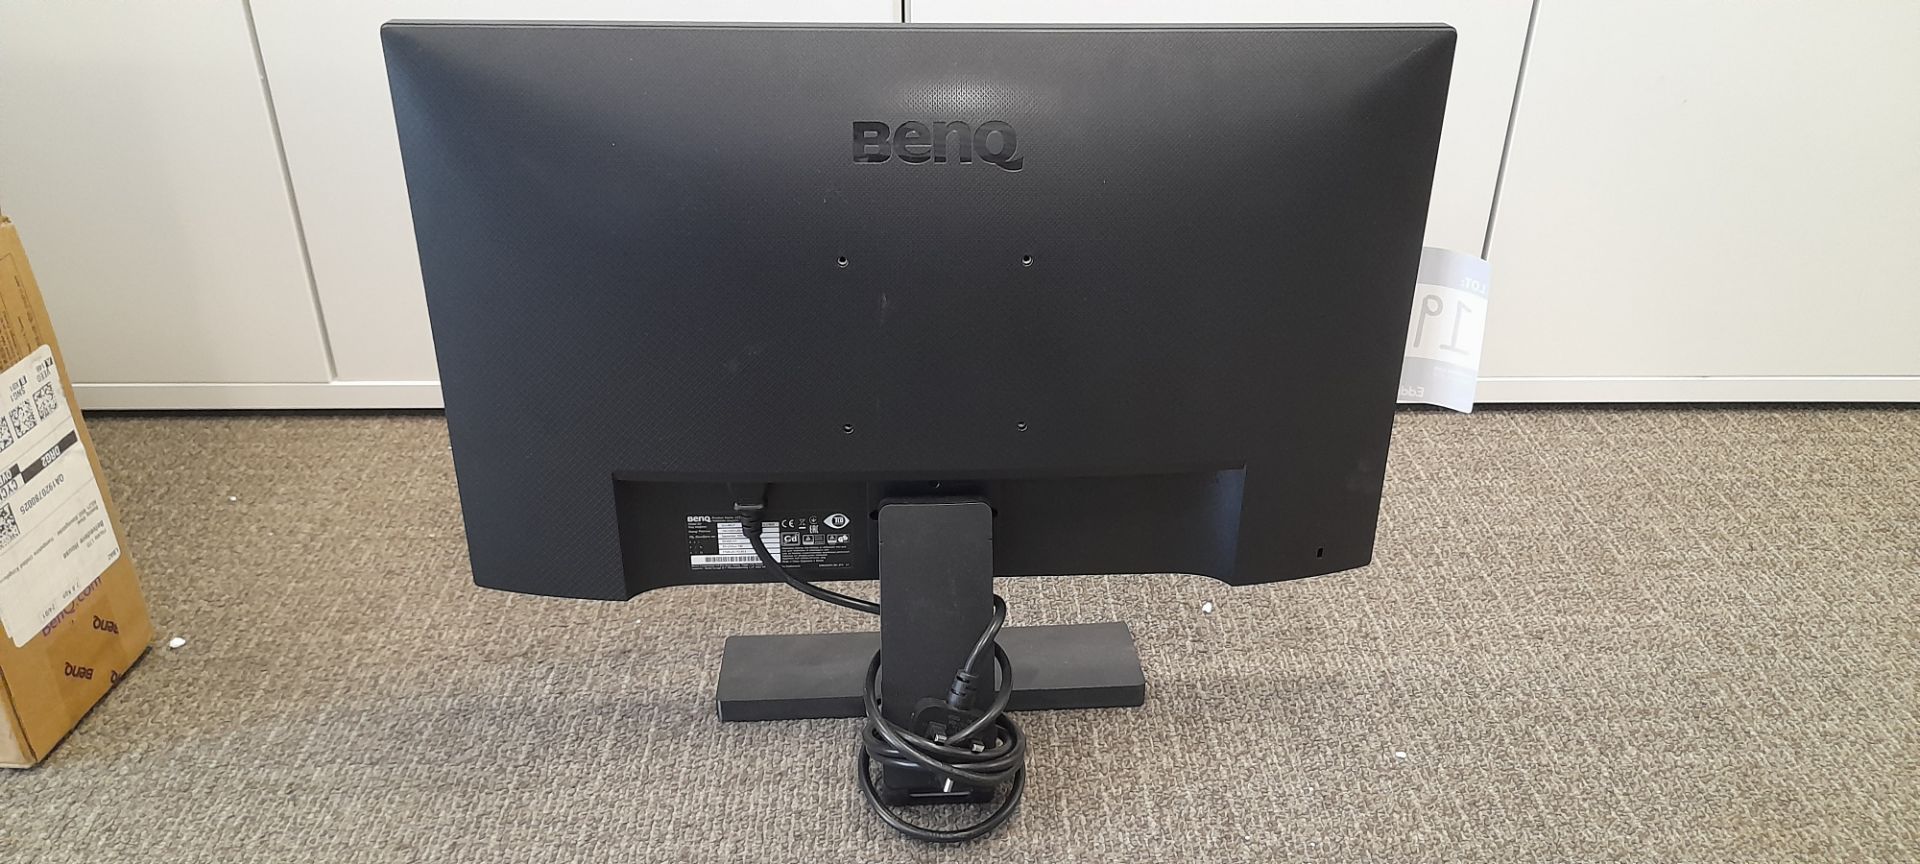 Benq 24" monitor, GL2480-T, S/N: ETW9L01791019 - Image 2 of 3